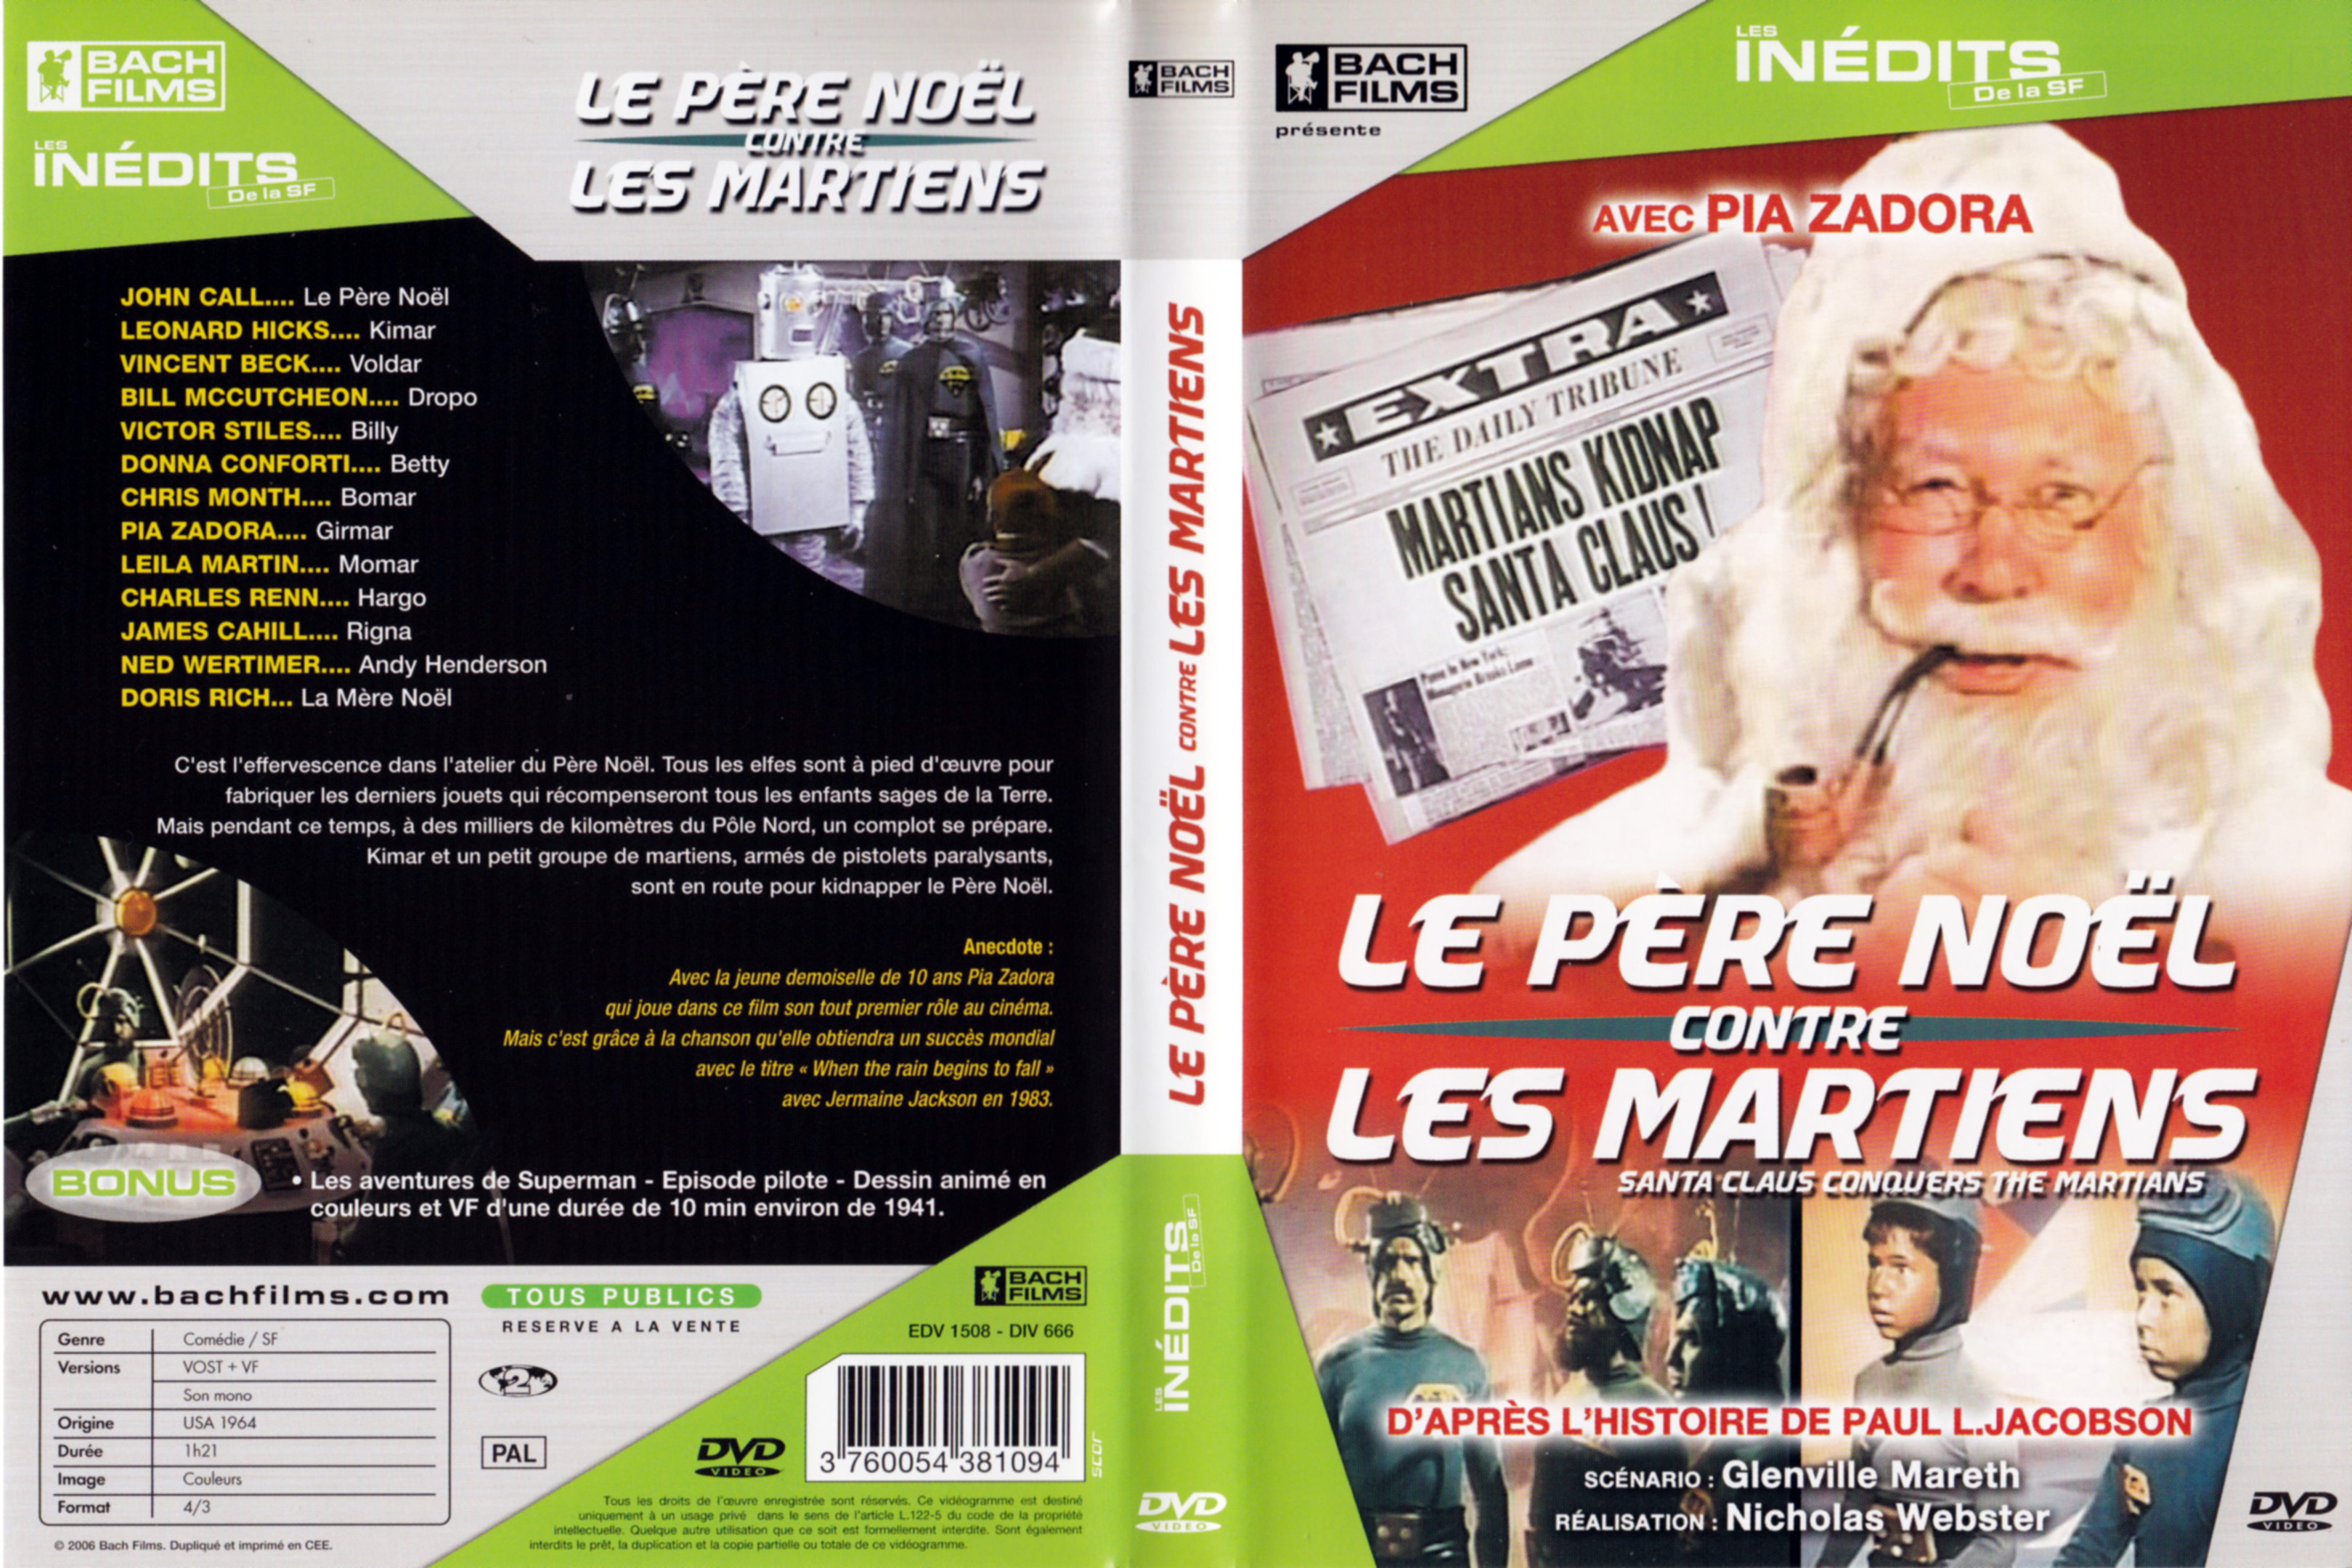 Jaquette DVD Le pere noel contre les martiens